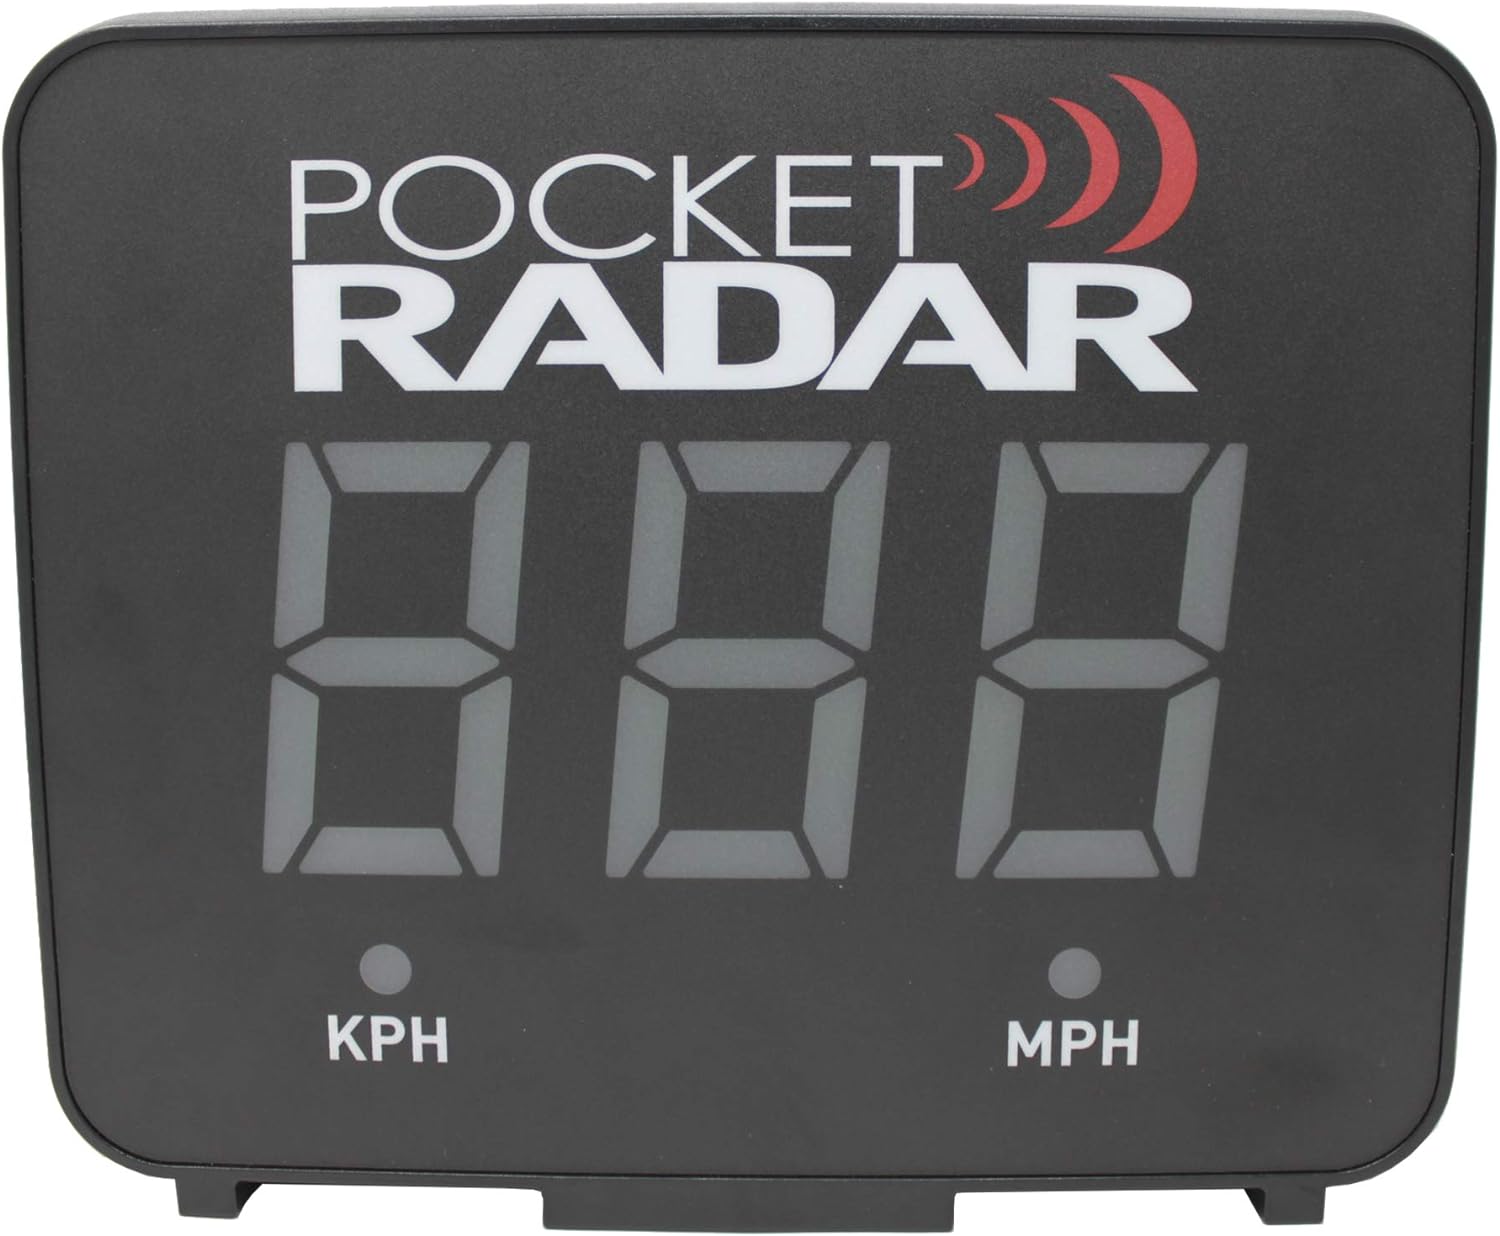 Pocket Radar - Smart Display Accessory for Smart Coach Radar